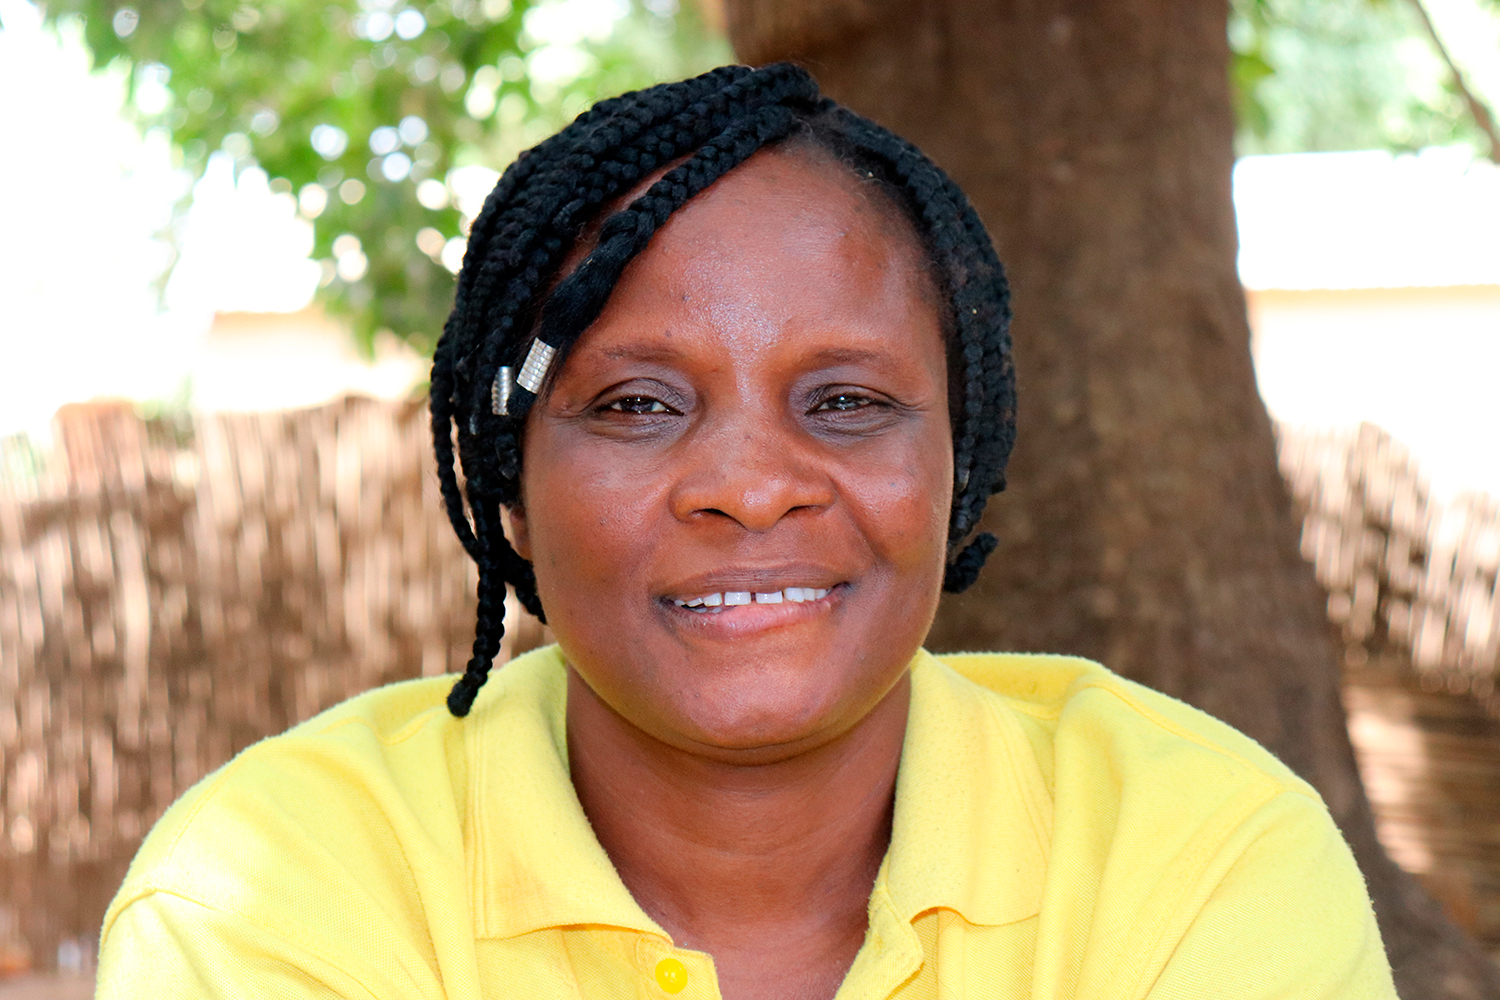 Joséphine KOUBETI, fondatrice de l’Association art culture tourisme, défend la culture et le patrimoine du nord du Bénin, dont les tata somba qu’elle définit comme étant des constructions propres à cette culture et sacrées. 